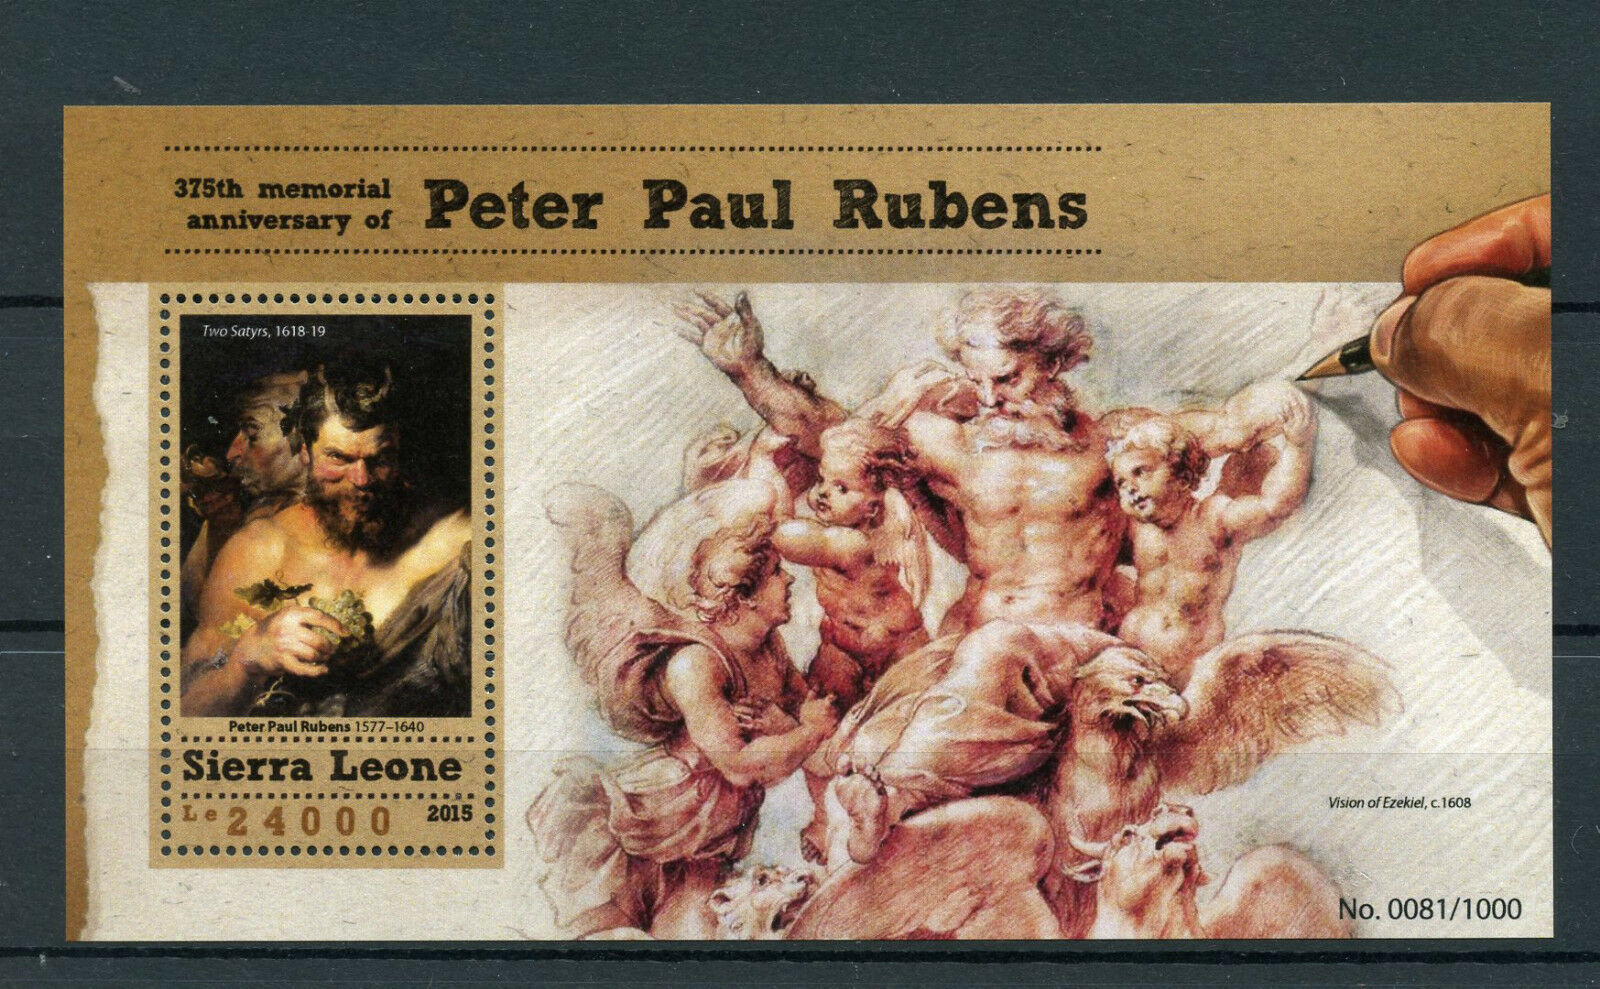 Sierra Leone 2015 MNH Peter Paul Rubens 375th Memorial Anniv 1v S/S Two Satyrs